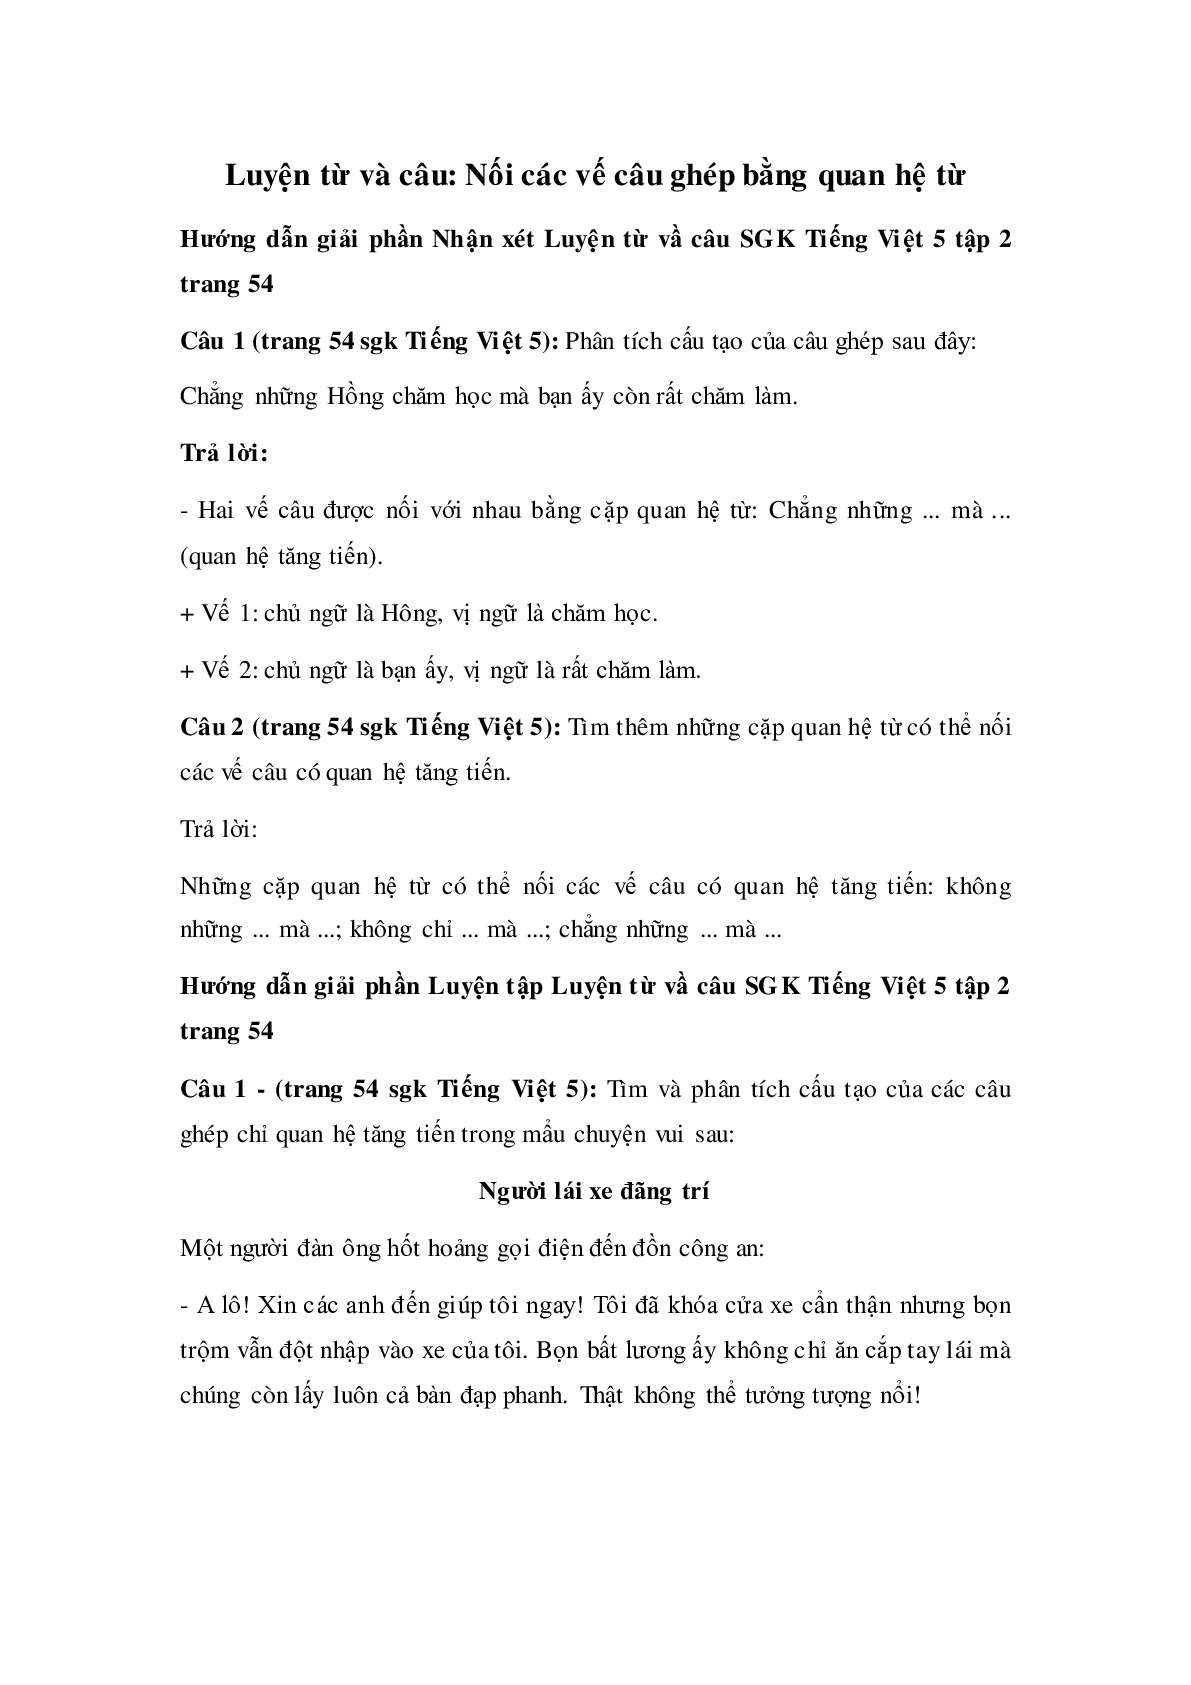 Soạn Tiếng Việt lớp 5: Luyện từ và câu: Nối các vế câu ghép bằng quan hệ từ mới nhất (trang 1)